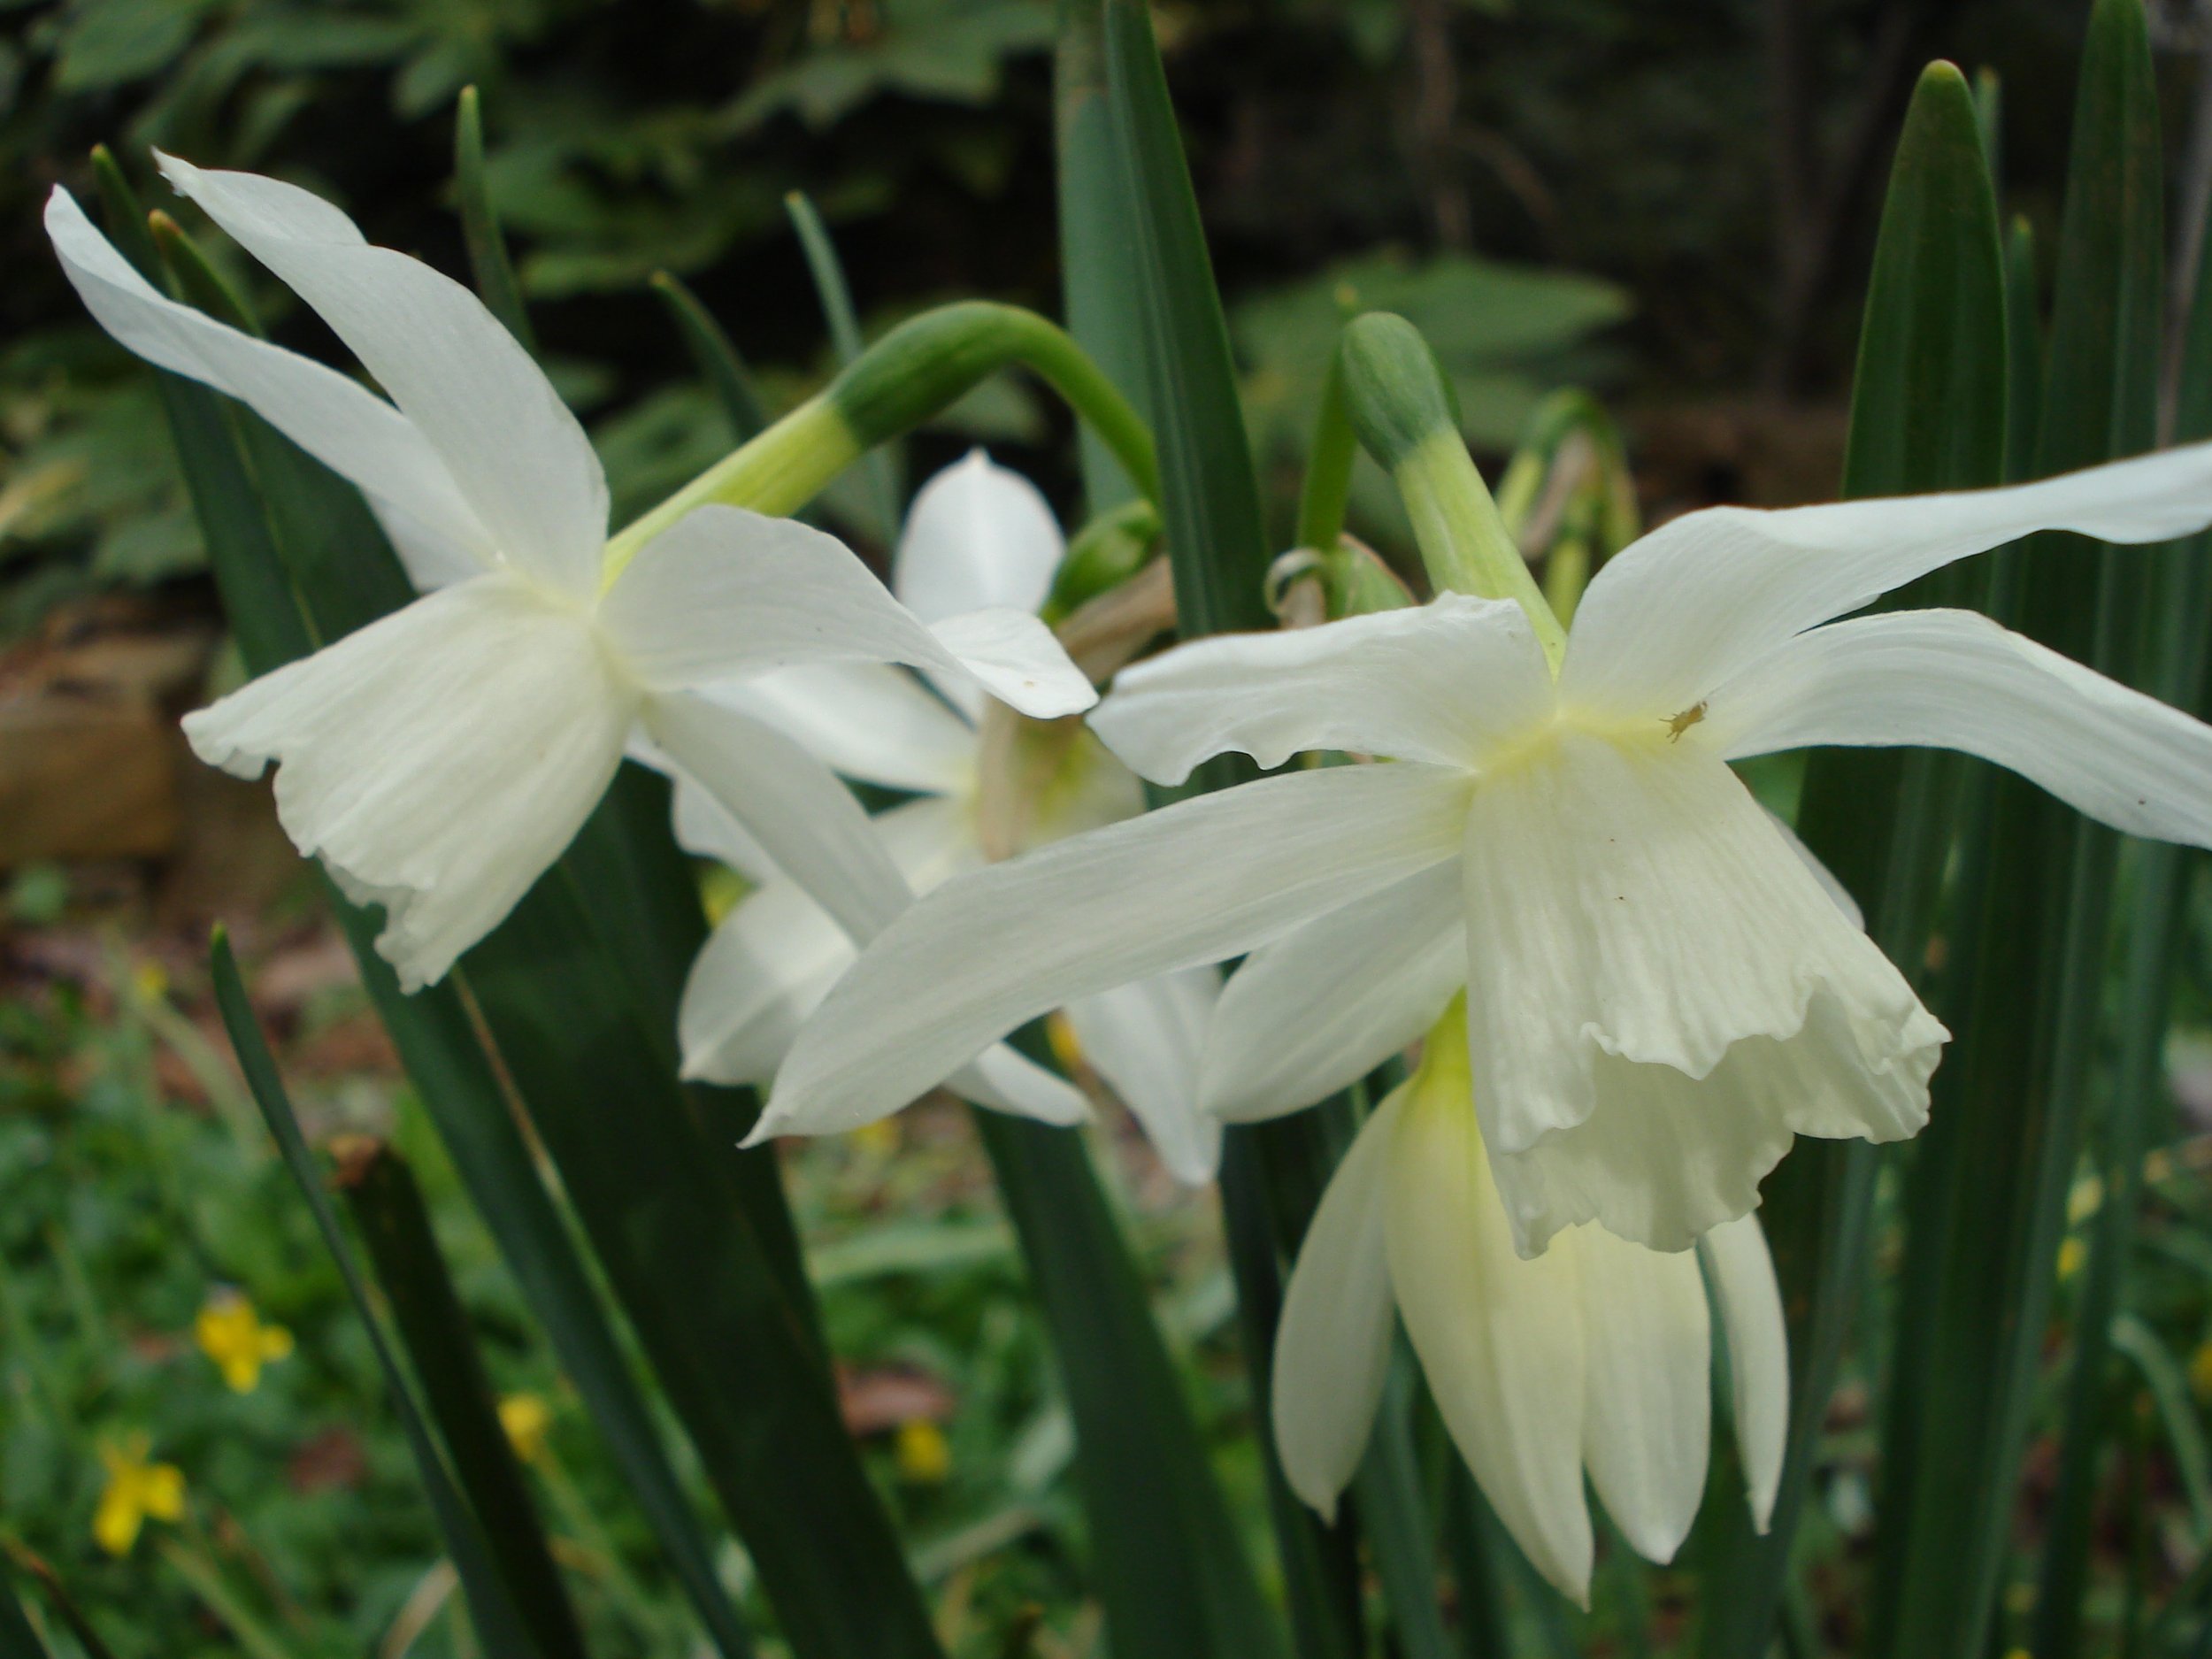 triandrus daffodil